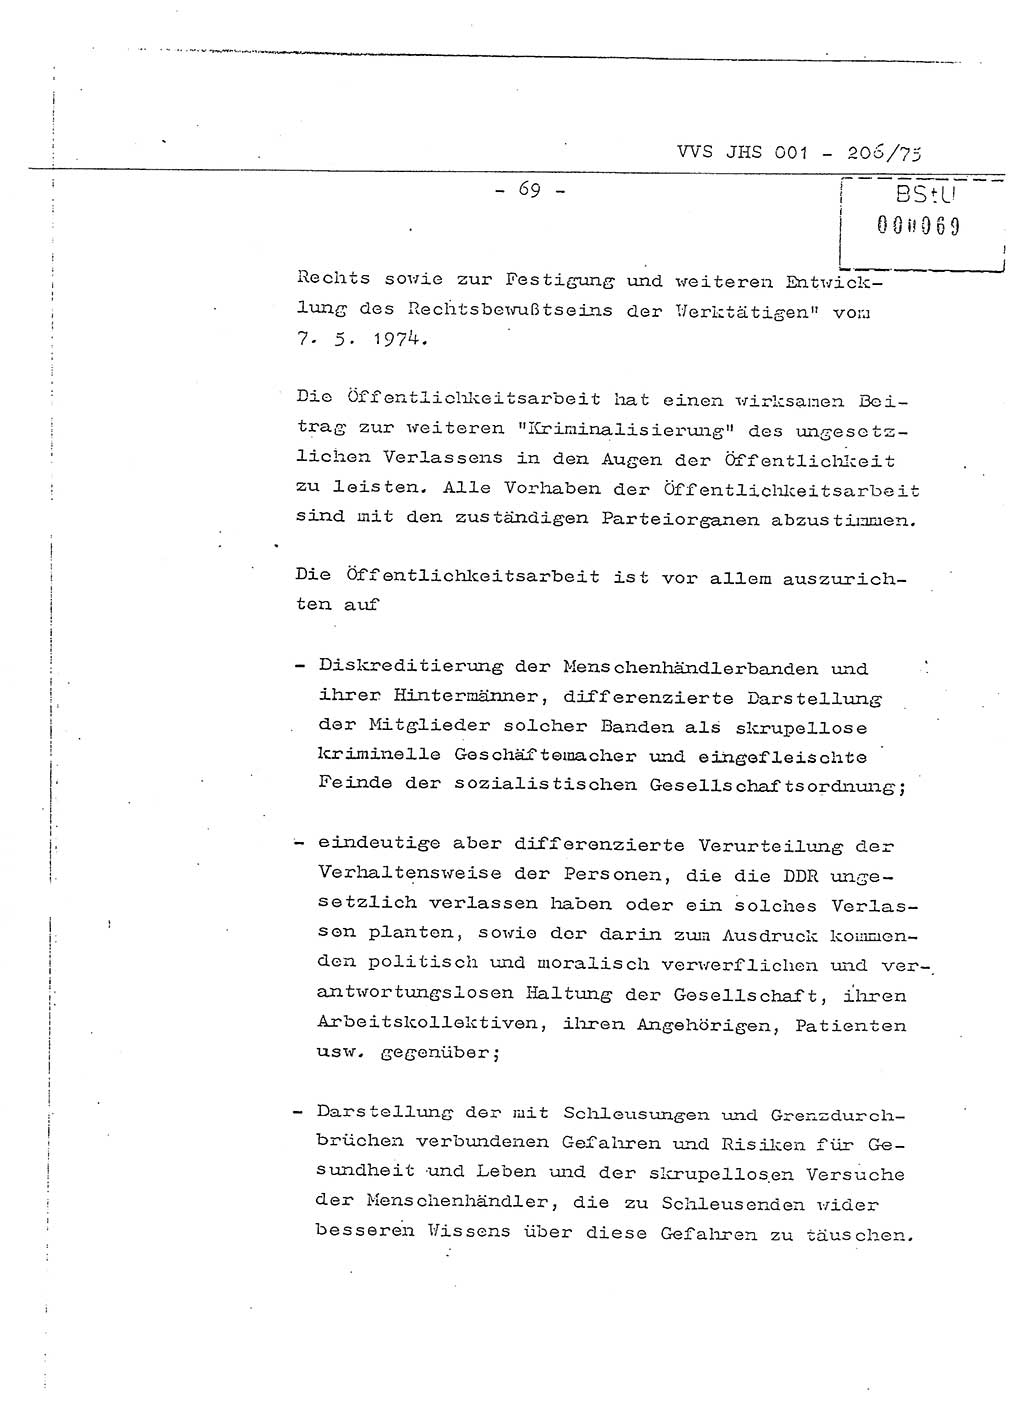 Dissertation Generalmajor Manfred Hummitzsch (Leiter der BV Leipzig), Generalmajor Heinz Fiedler (HA Ⅵ), Oberst Rolf Fister (HA Ⅸ), Ministerium für Staatssicherheit (MfS) [Deutsche Demokratische Republik (DDR)], Juristische Hochschule (JHS), Vertrauliche Verschlußsache (VVS) 001-206/75, Potsdam 1975, Seite 69 (Diss. MfS DDR JHS VVS 001-206/75 1975, S. 69)